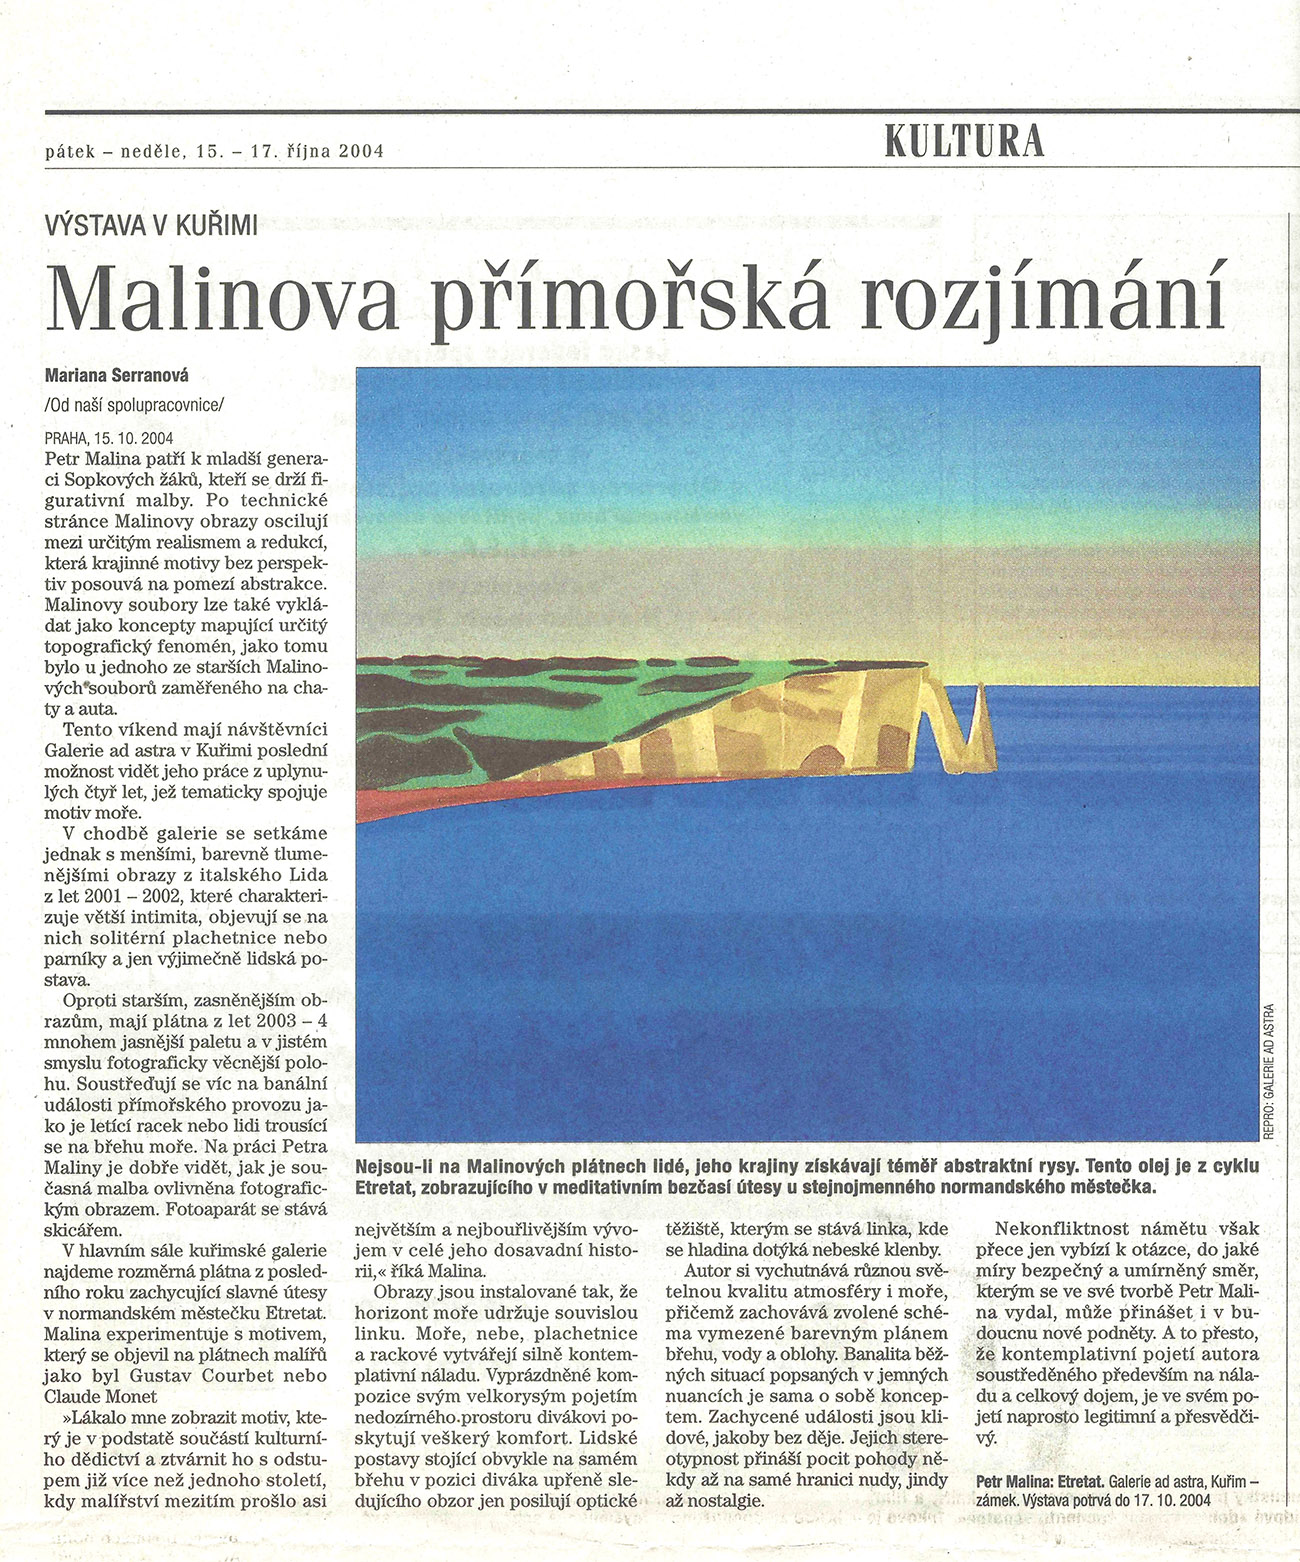 2004, M. Serranová, Hospodářské noviny